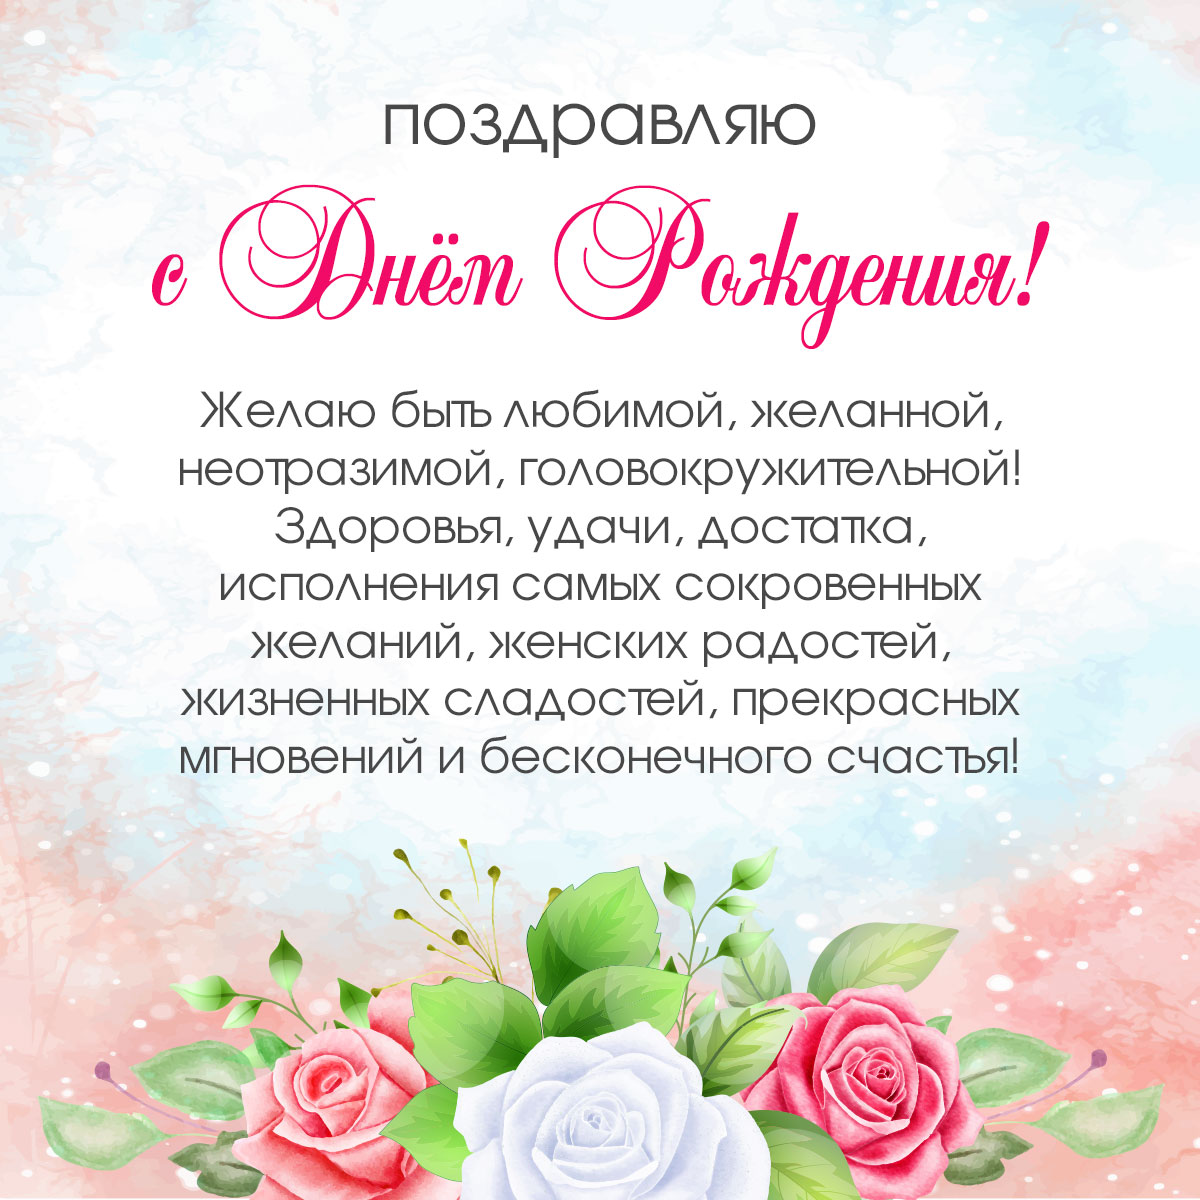 Картинка с текстом поздравления с днем рождения женщине с белыми и красными розами.